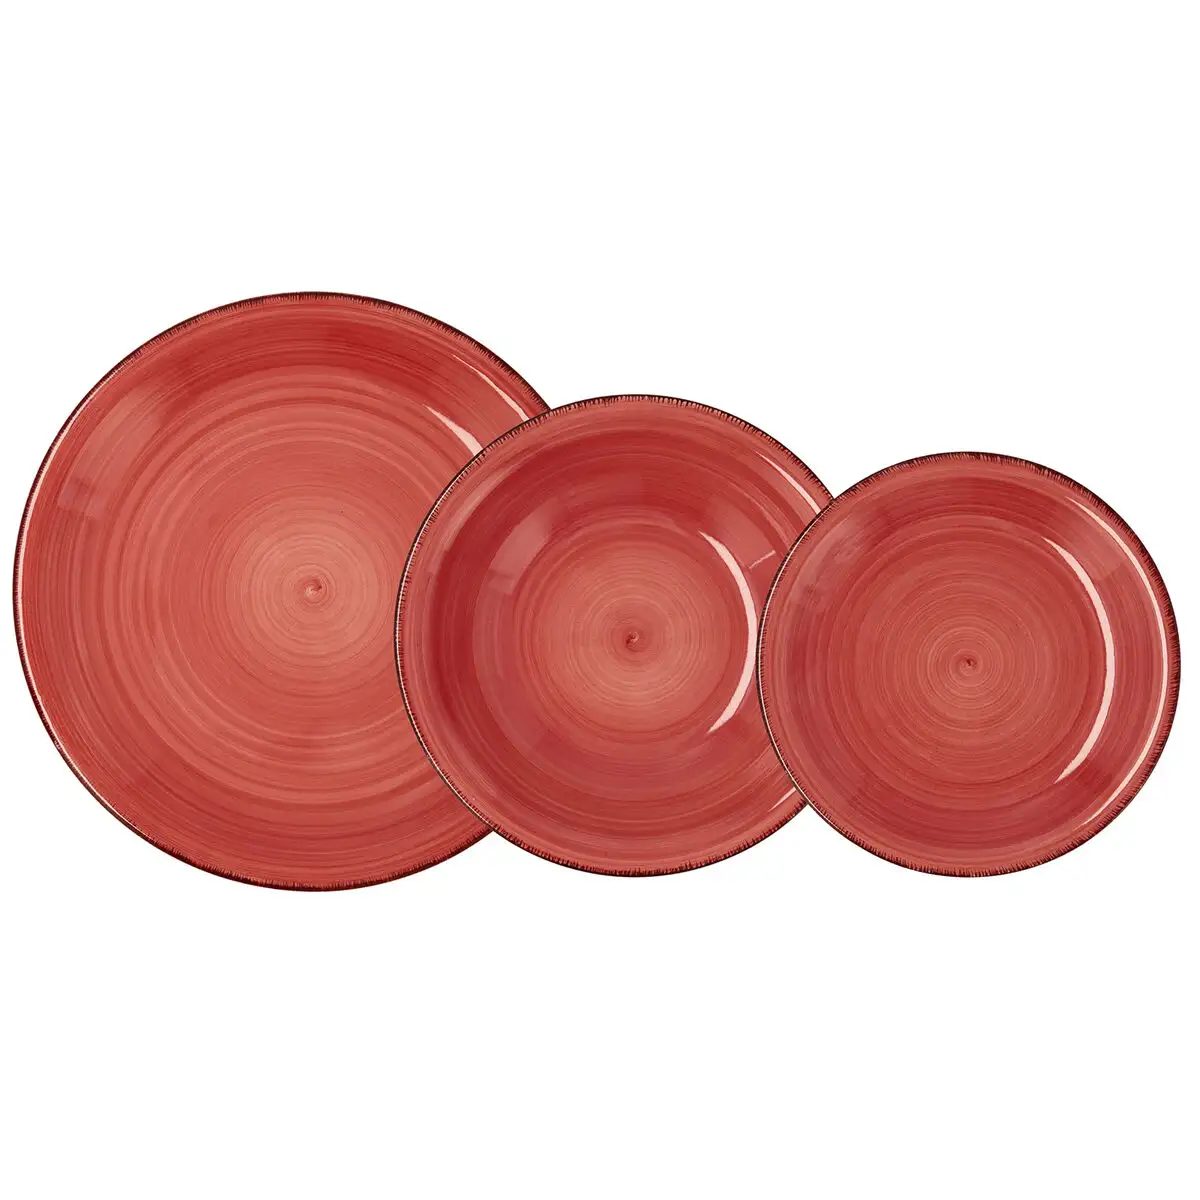 Service de vaisselle quid vita 18 pieces ceramique rouge_6804. DIAYTAR SENEGAL - Où le Shopping est un Plaisir Engagé. Parcourez notre catalogue et choisissez des produits qui respectent vos valeurs et vos attentes.